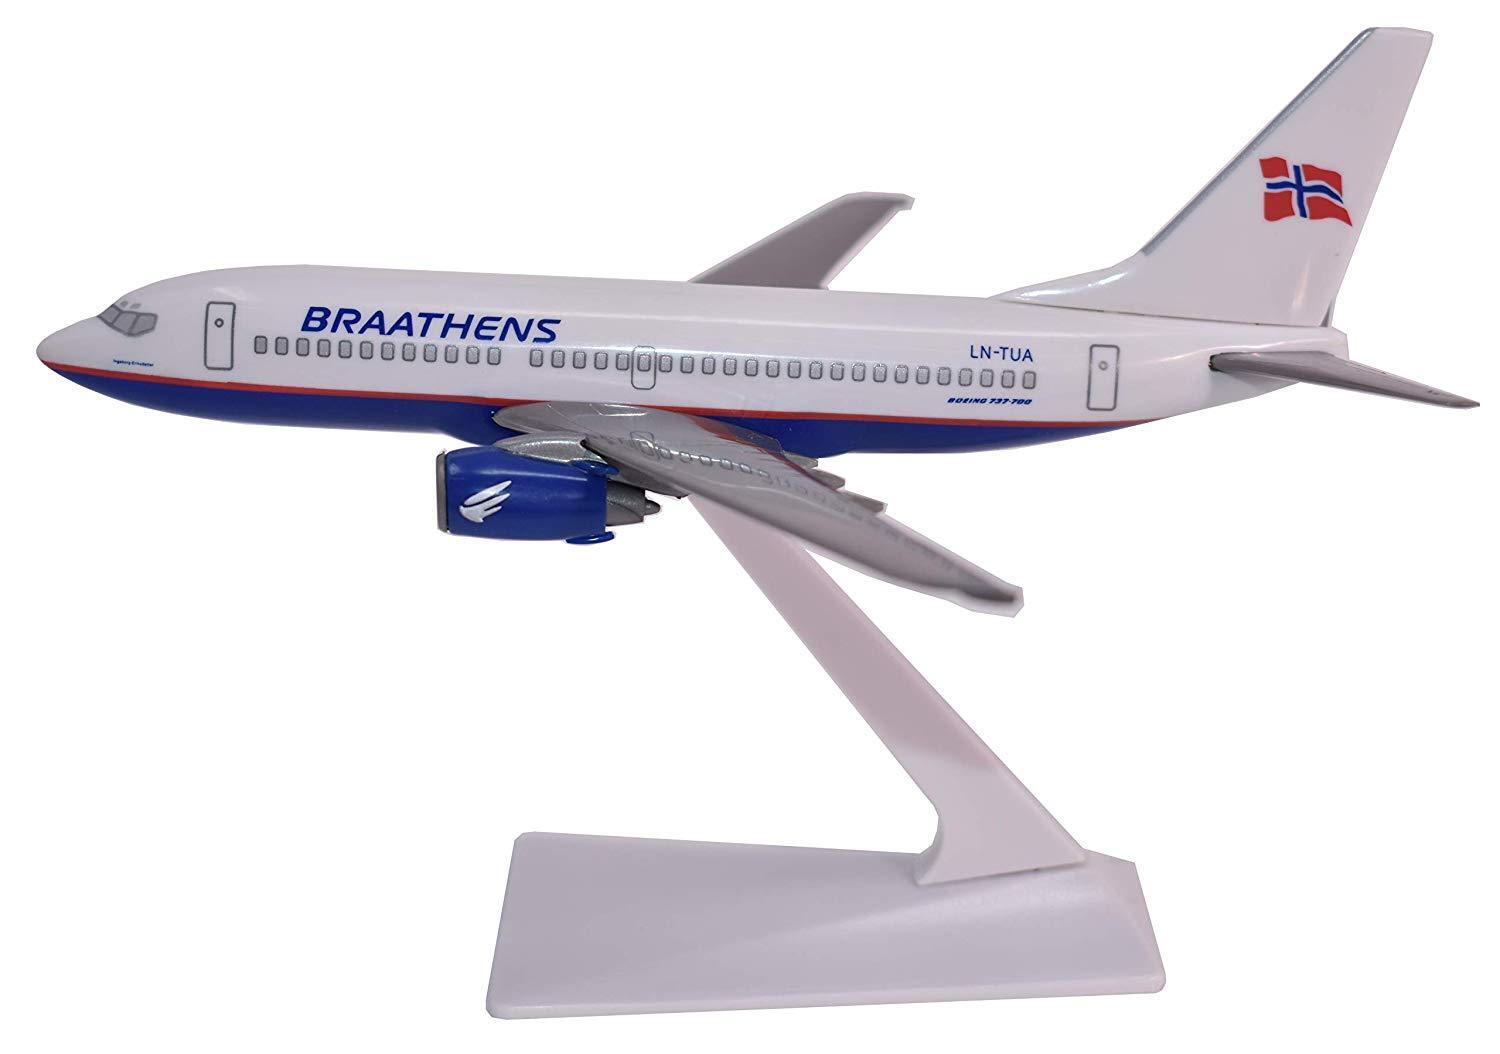 Flight Miniatures Braathens Airline Boeing 737-700 Desk Top 1/200 Model Airplane